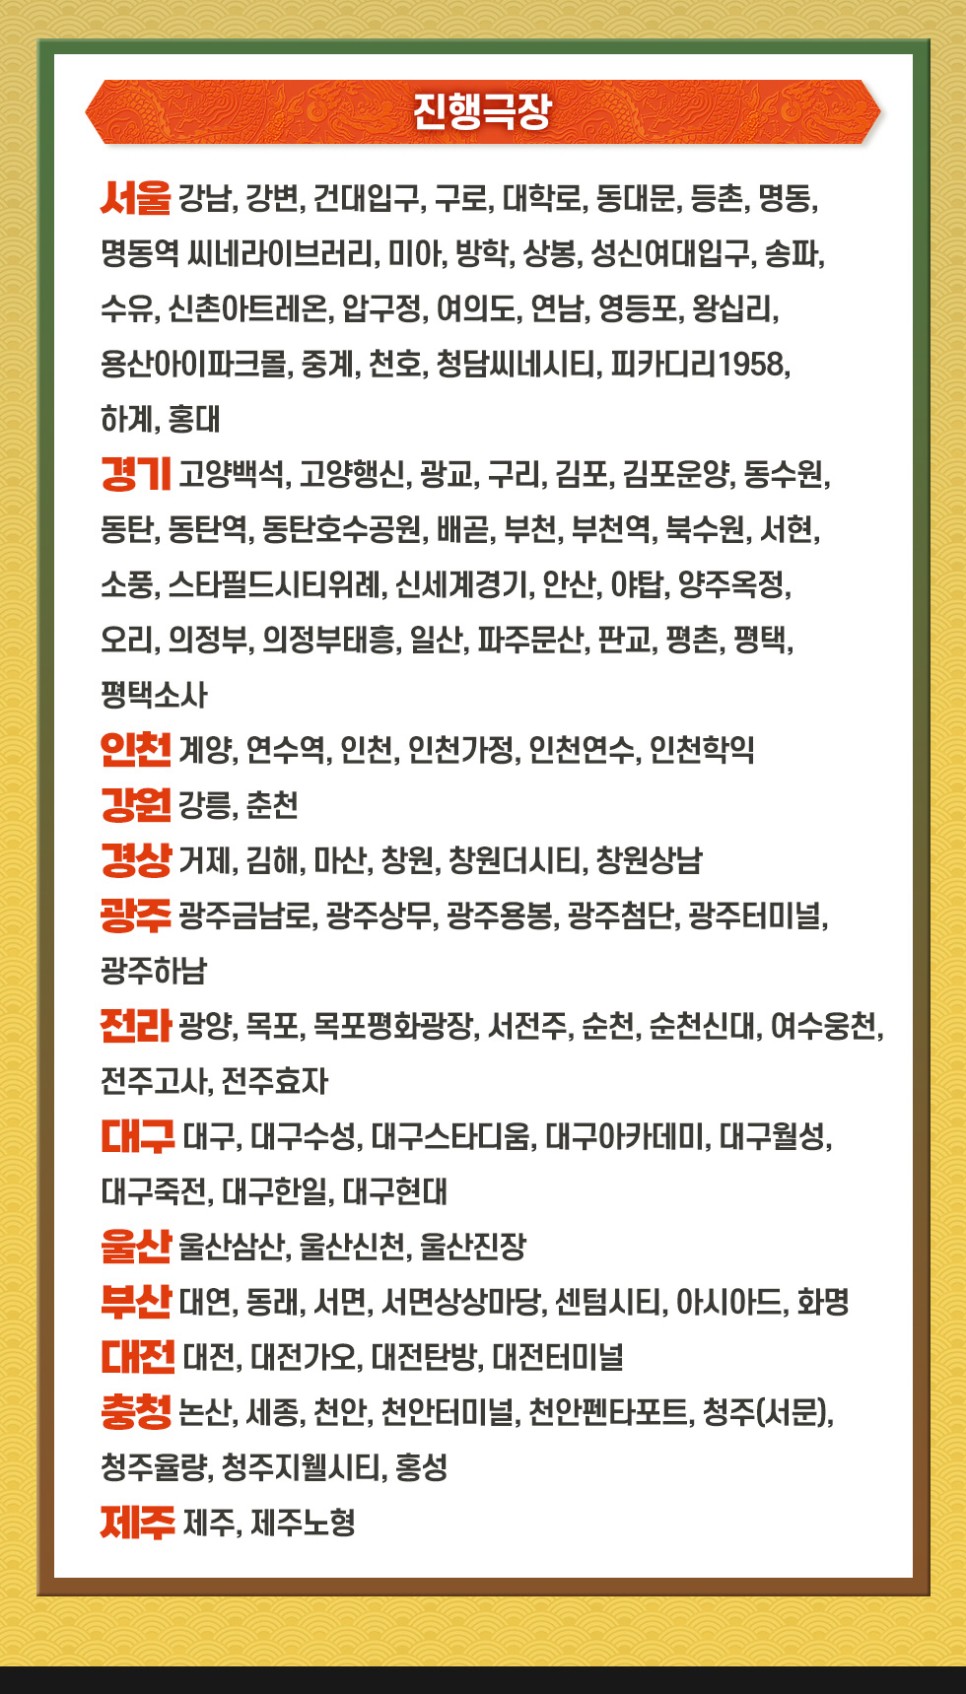 쿵푸팬더4 개봉일 관람시 CGV 메가박스 팝콘 할인 무료 롯데 시네마 싱글콤보(팝콘 콜라) 증정 이벤트